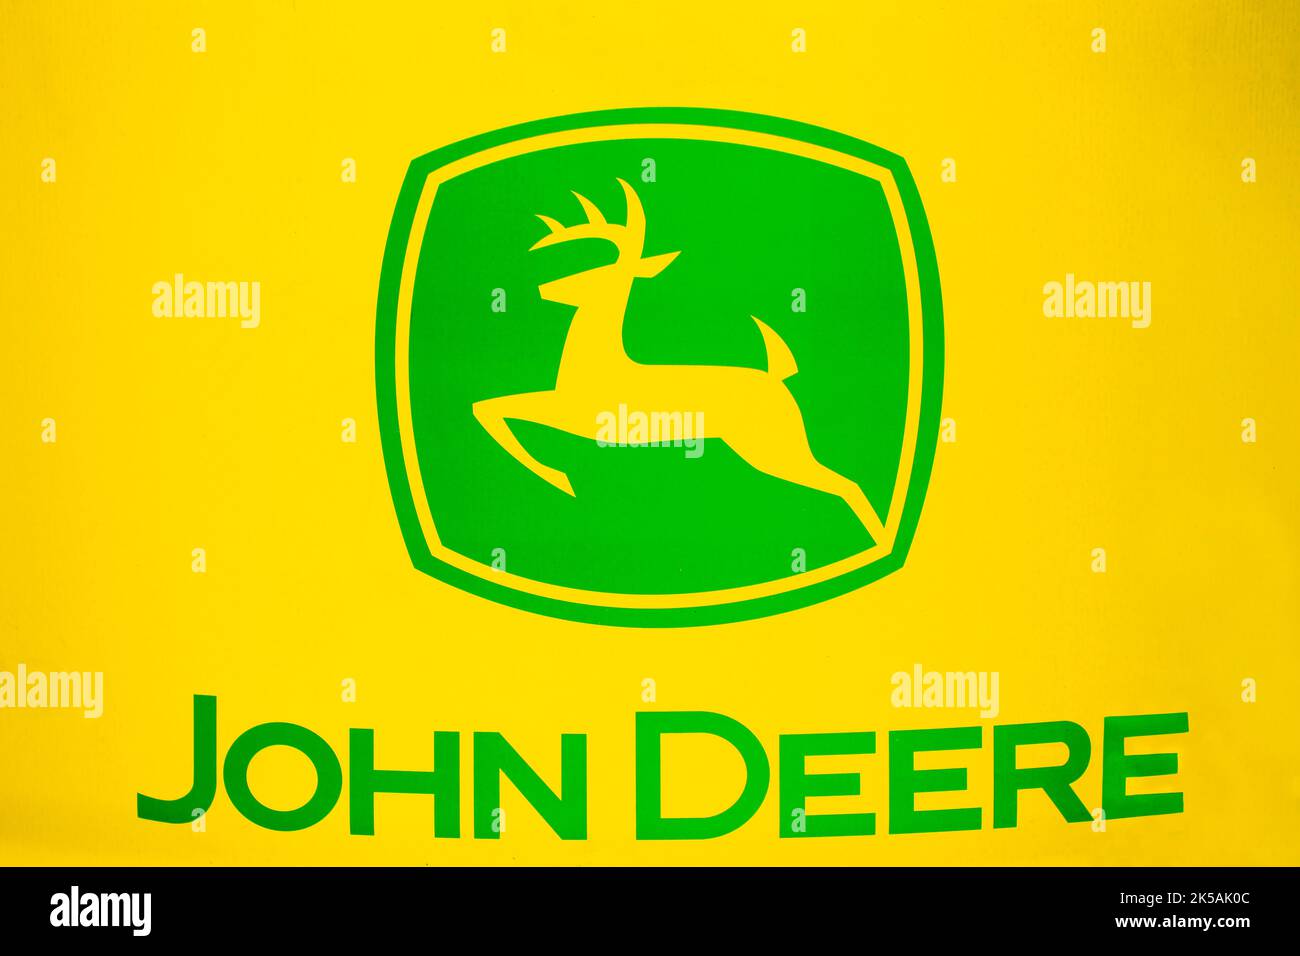 Các bức ảnh chất lượng cao về biểu tượng John Deere đang chờ bạn khám phá. Truy cập ngay vào trang web Alamy để tìm kiếm những hình ảnh như ý của riêng bạn.